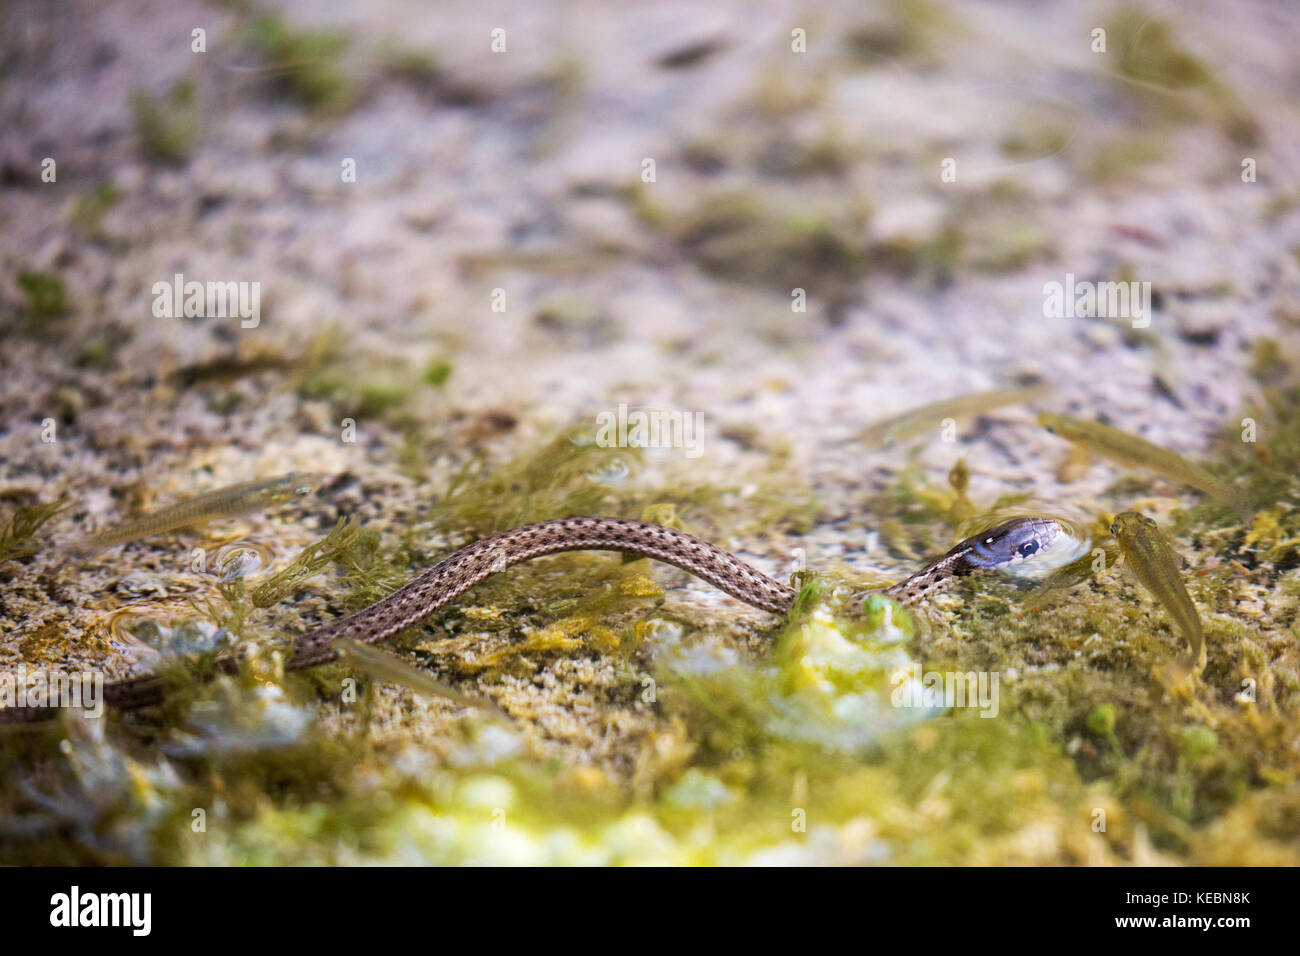 La couleuvre Ã Garter terrestre de l'Ouest (Thamnophis elegans) chasse le poisson dans une source chaude naturelle sur le mont Sulphur, dans le parc national Banff Banque D'Images